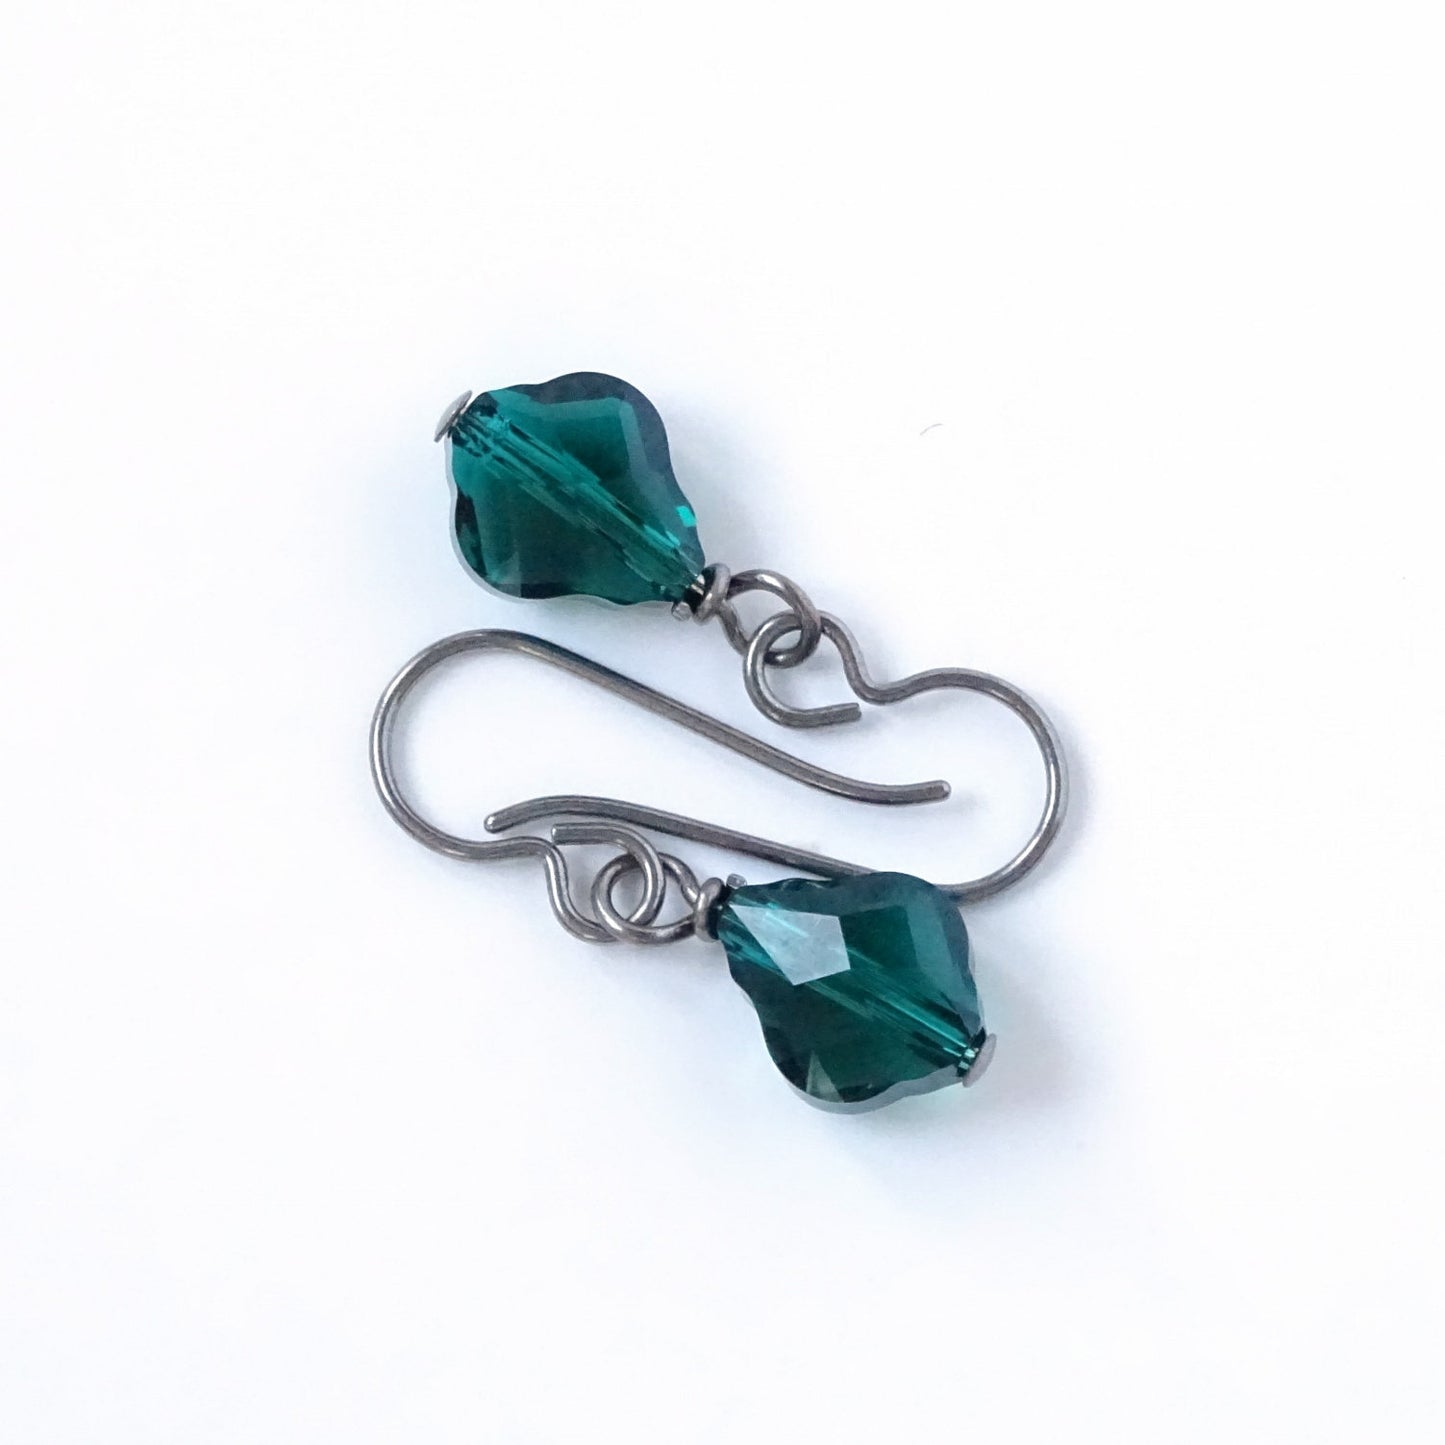 Emerald Green Baroque Crystal Titanium Earrings, Swarovski Crystal, Hypoallergenic Nickel Free Niobium Earrings for Sensitive Ears